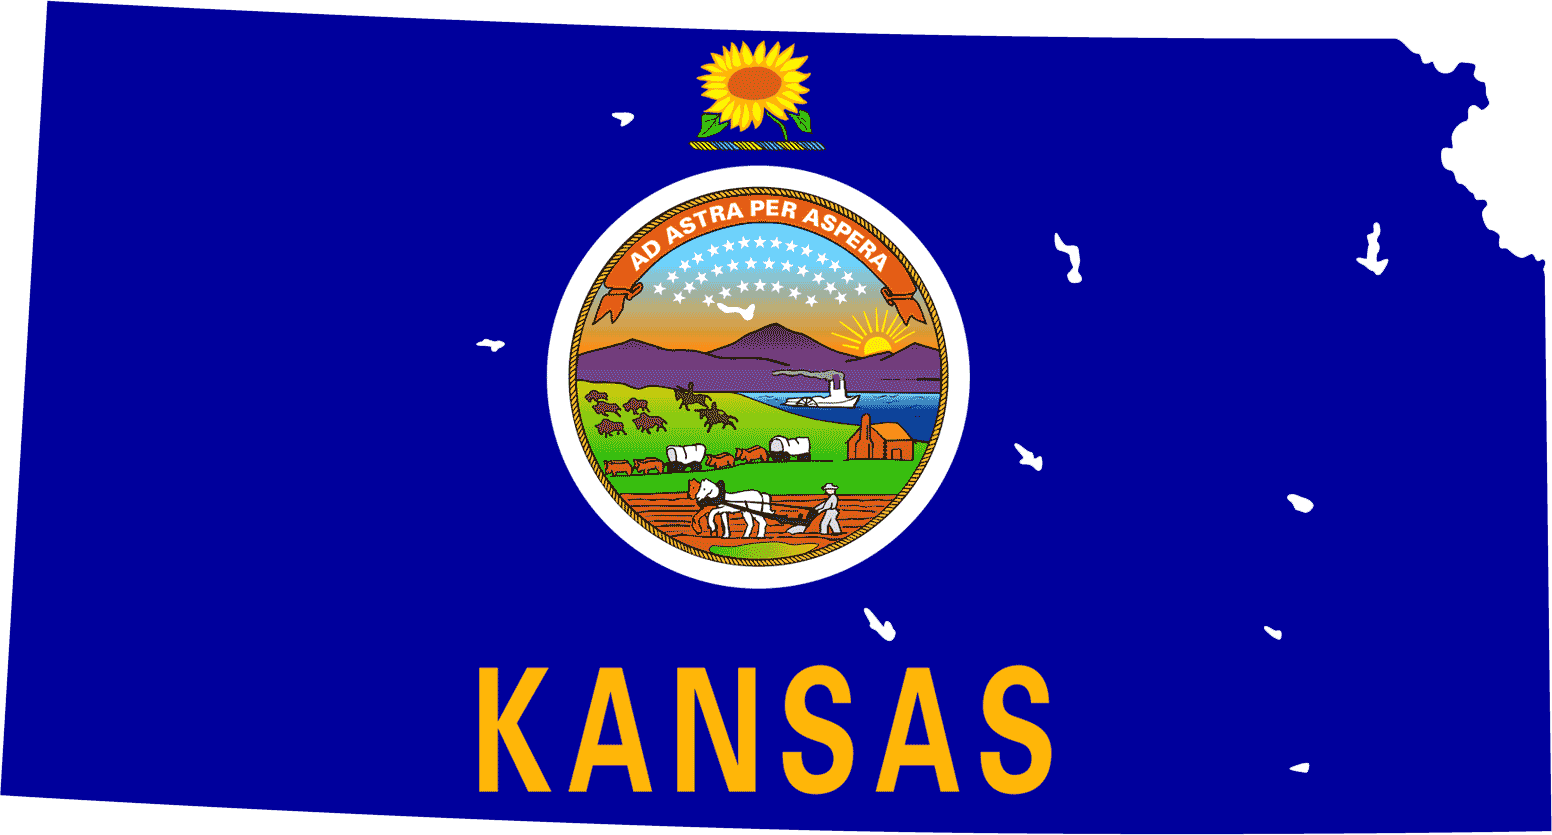 Kansas_bayrak_harita.png